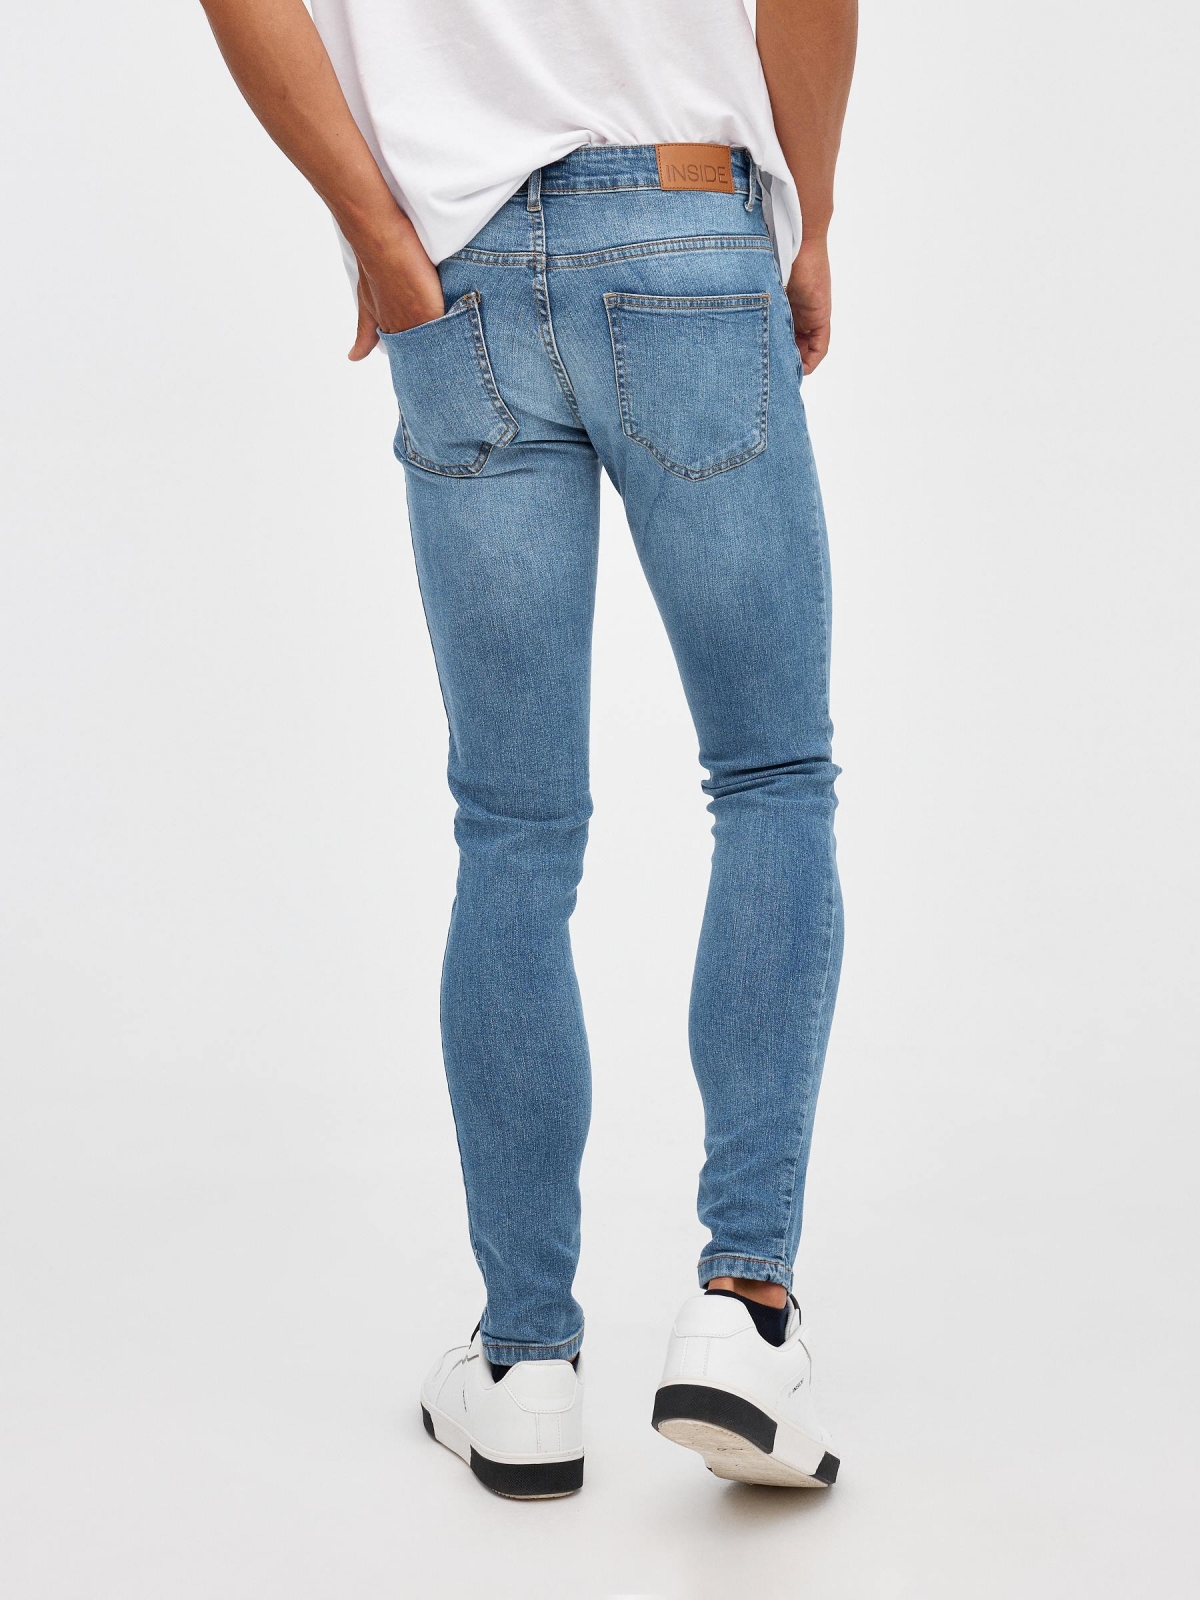 Jeans Super Slim modernos azul vista media trasera